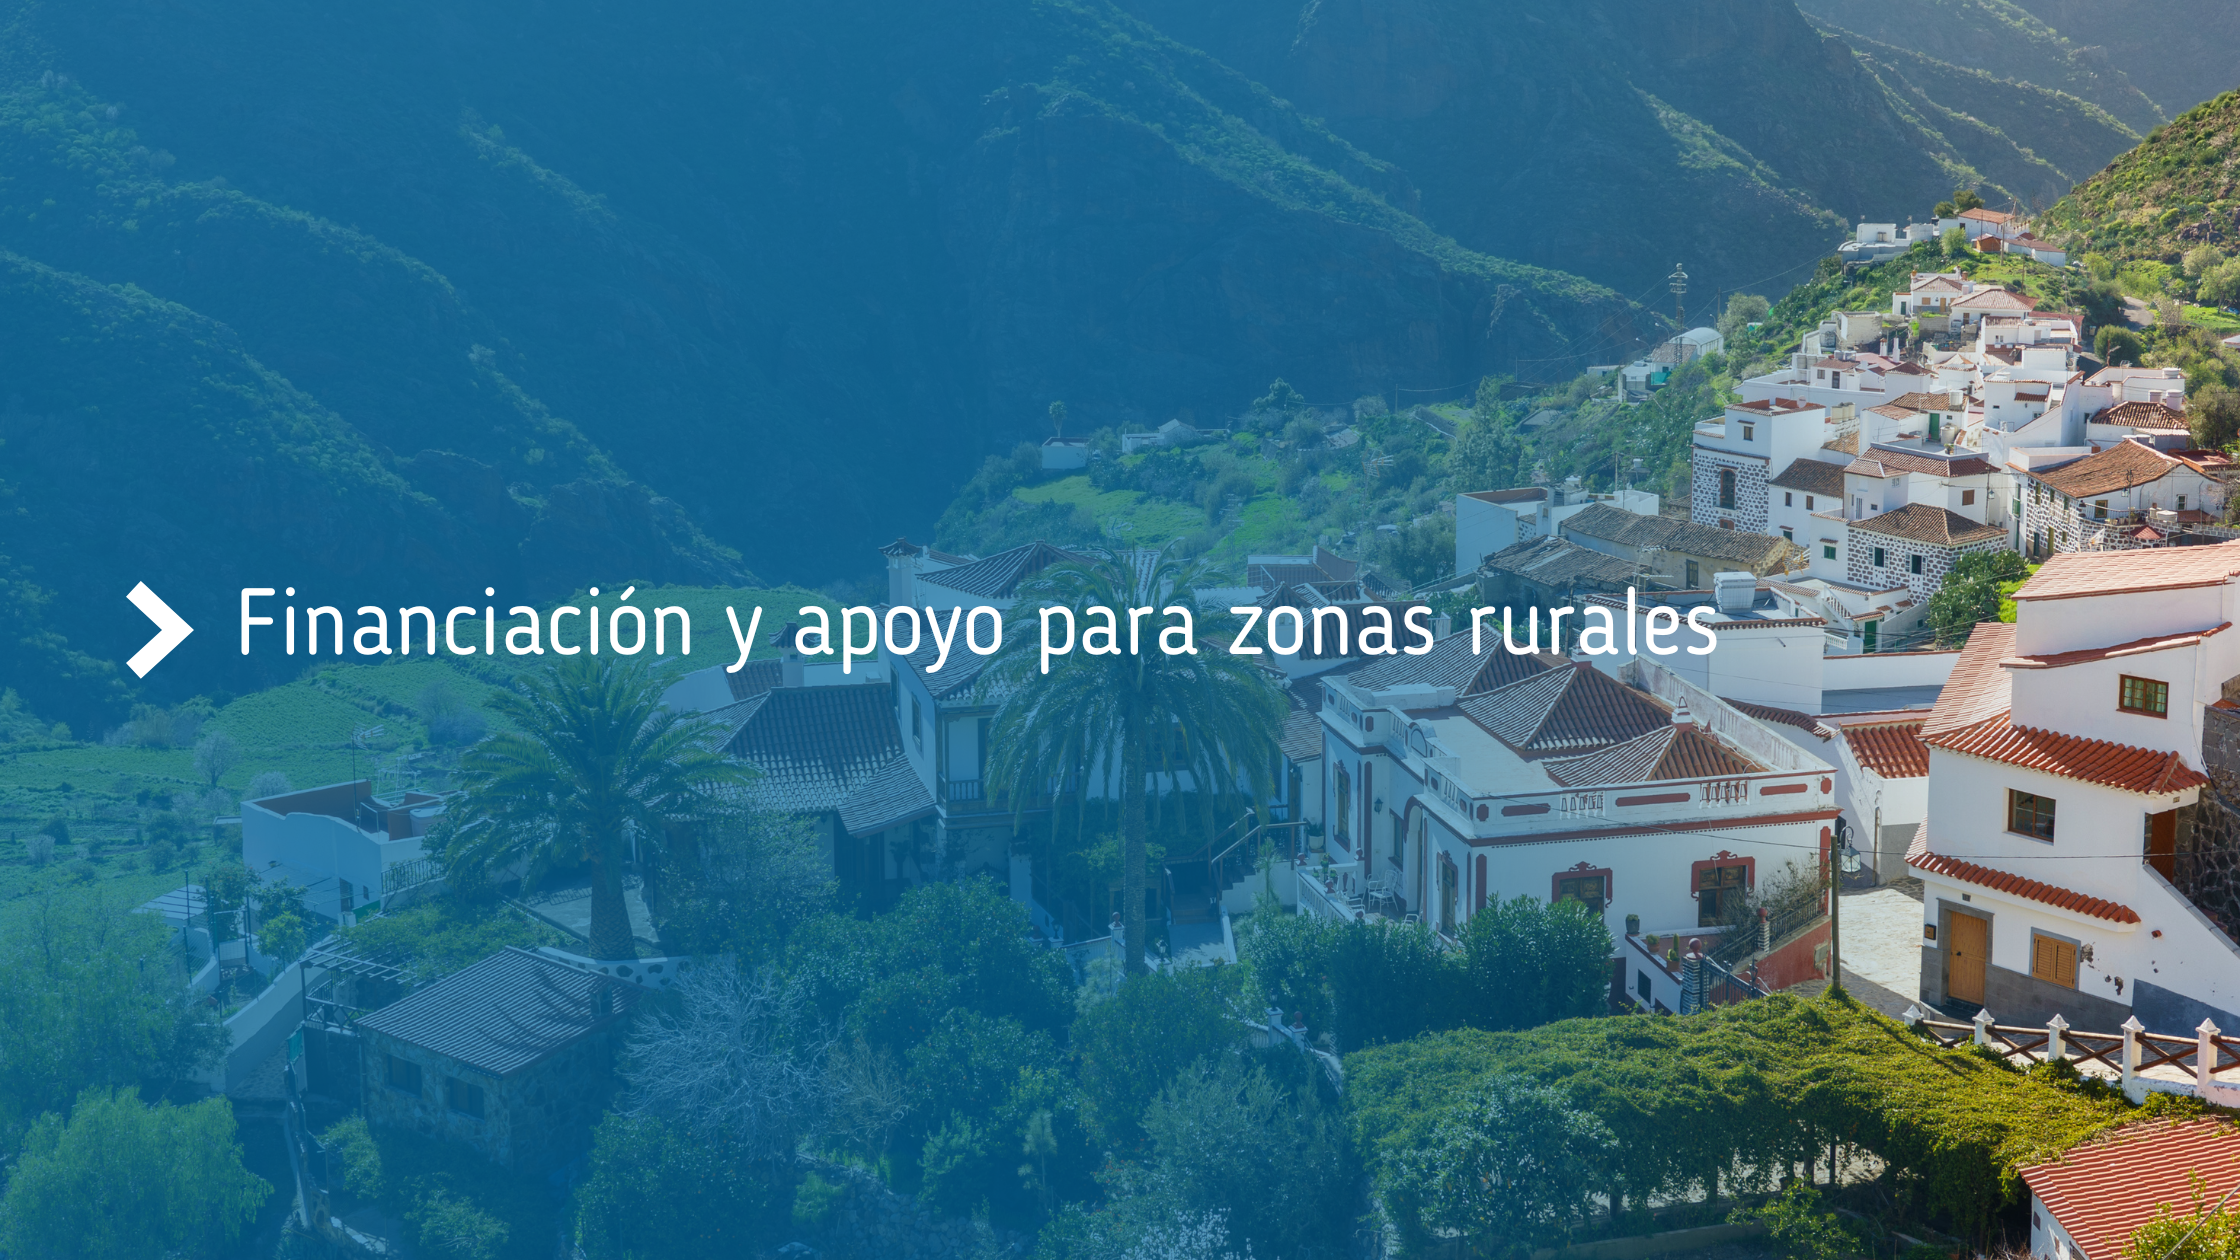 Financiación_para_zonas_rurales_a_un_clic_Descubra_Rural_Toolkit